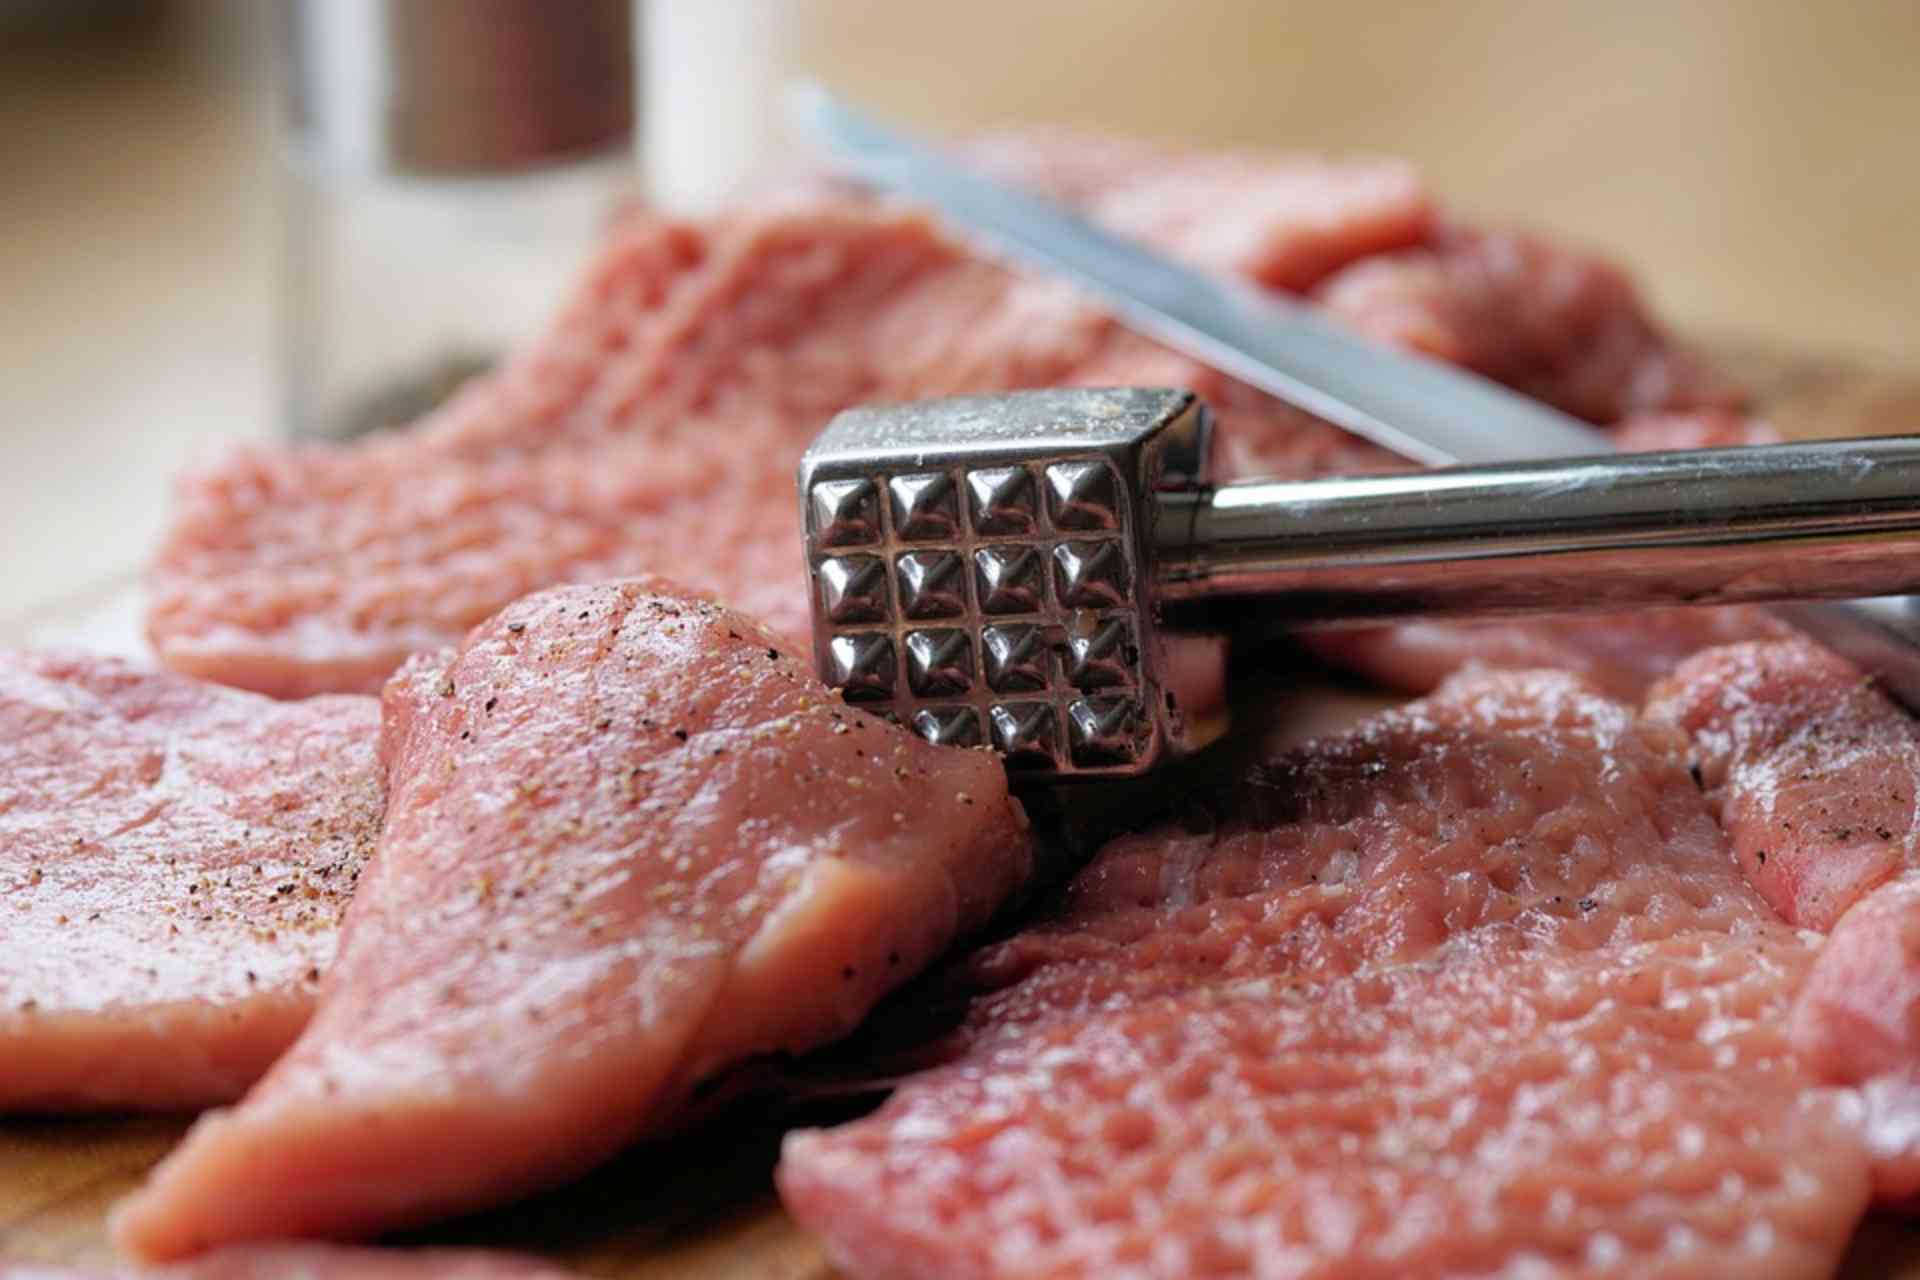 Carne de porco seca nunca mais, confira dicas para deixar a carne macia - Foto: Pixabay